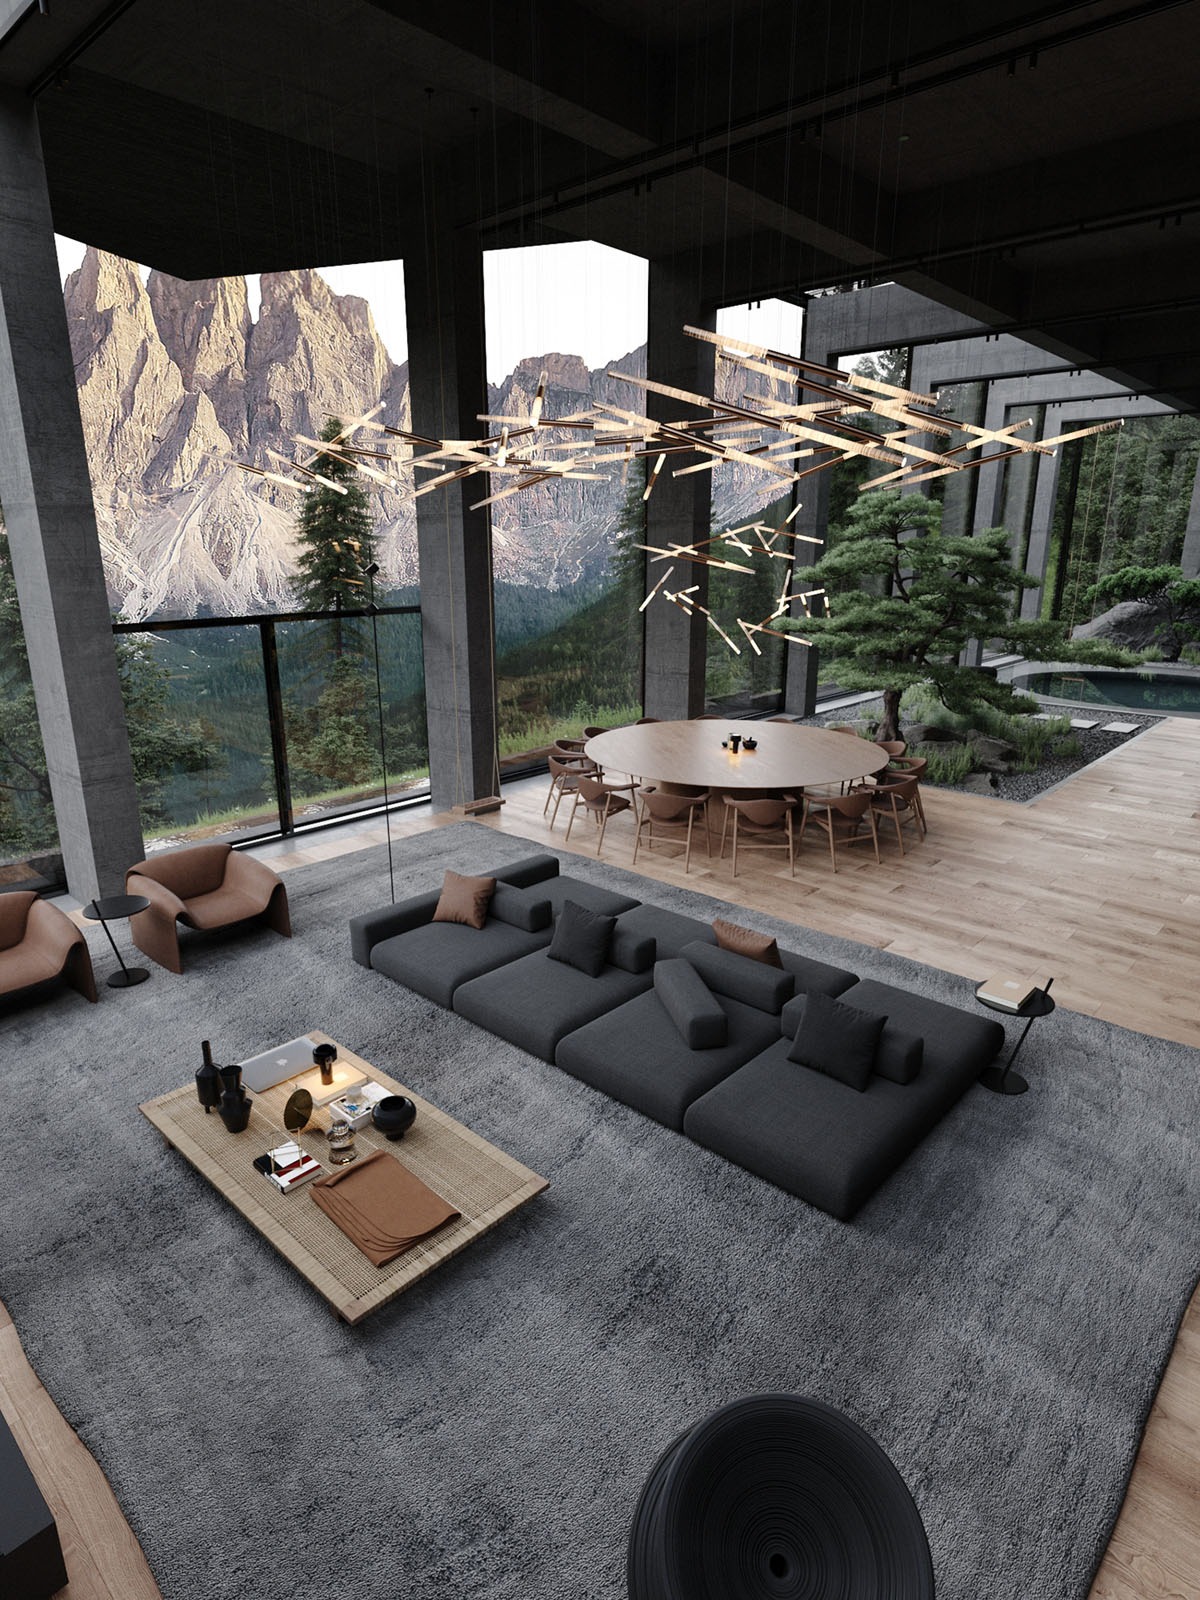 Diseño innovador: la casa del futuro en la ladera de una montaña 5